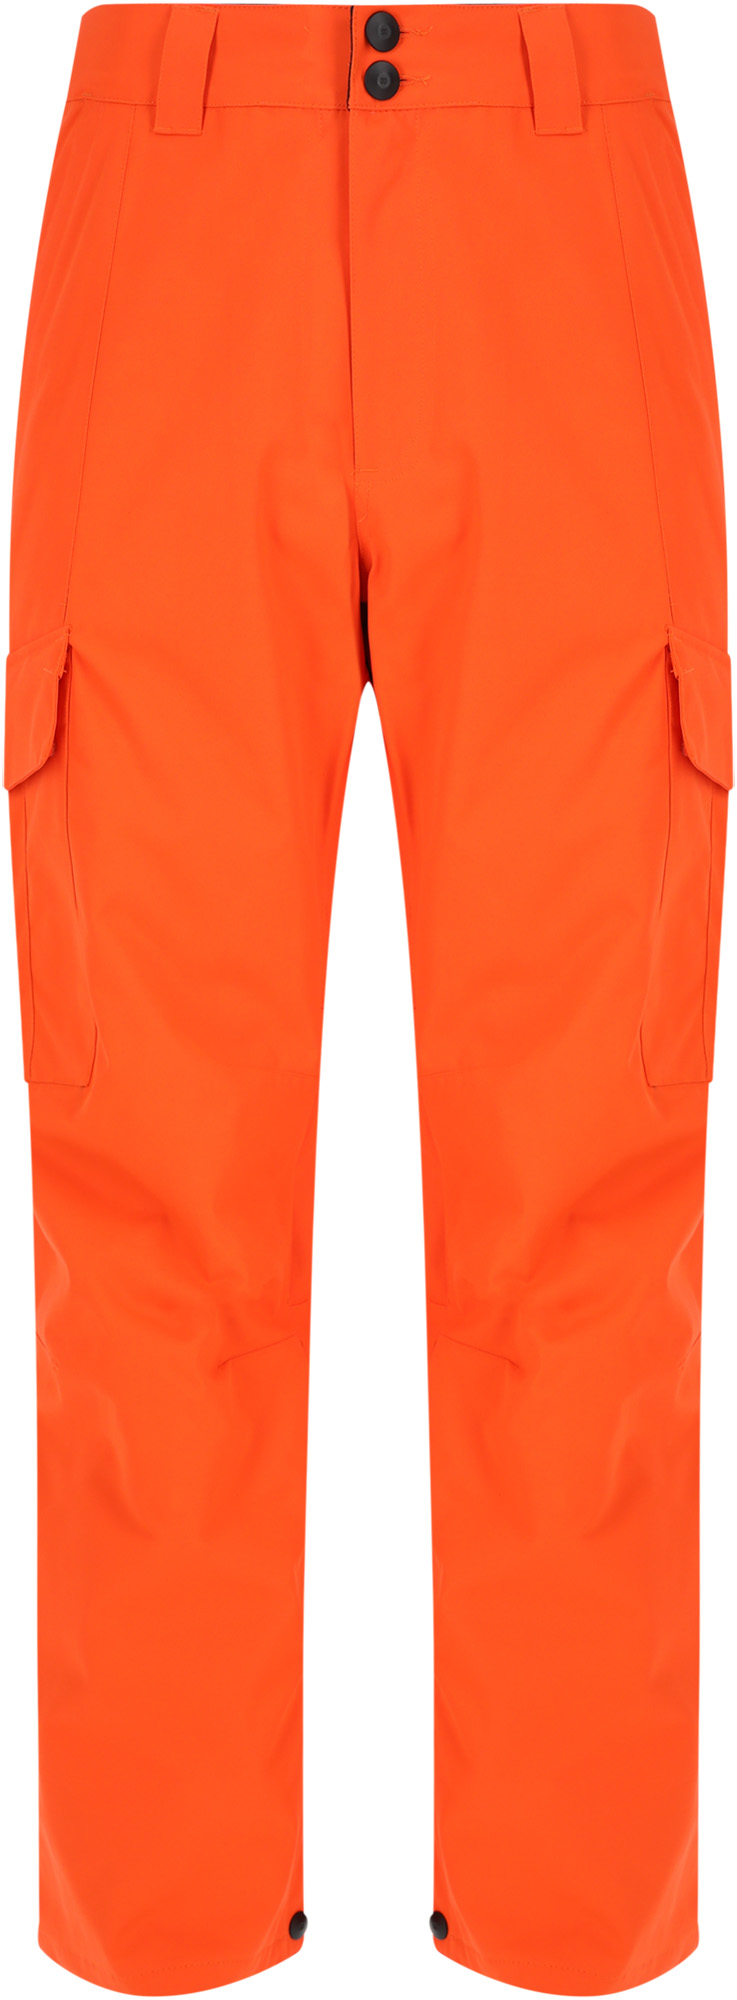 Спортивные брюки DC Banshee orangeade, XL INT